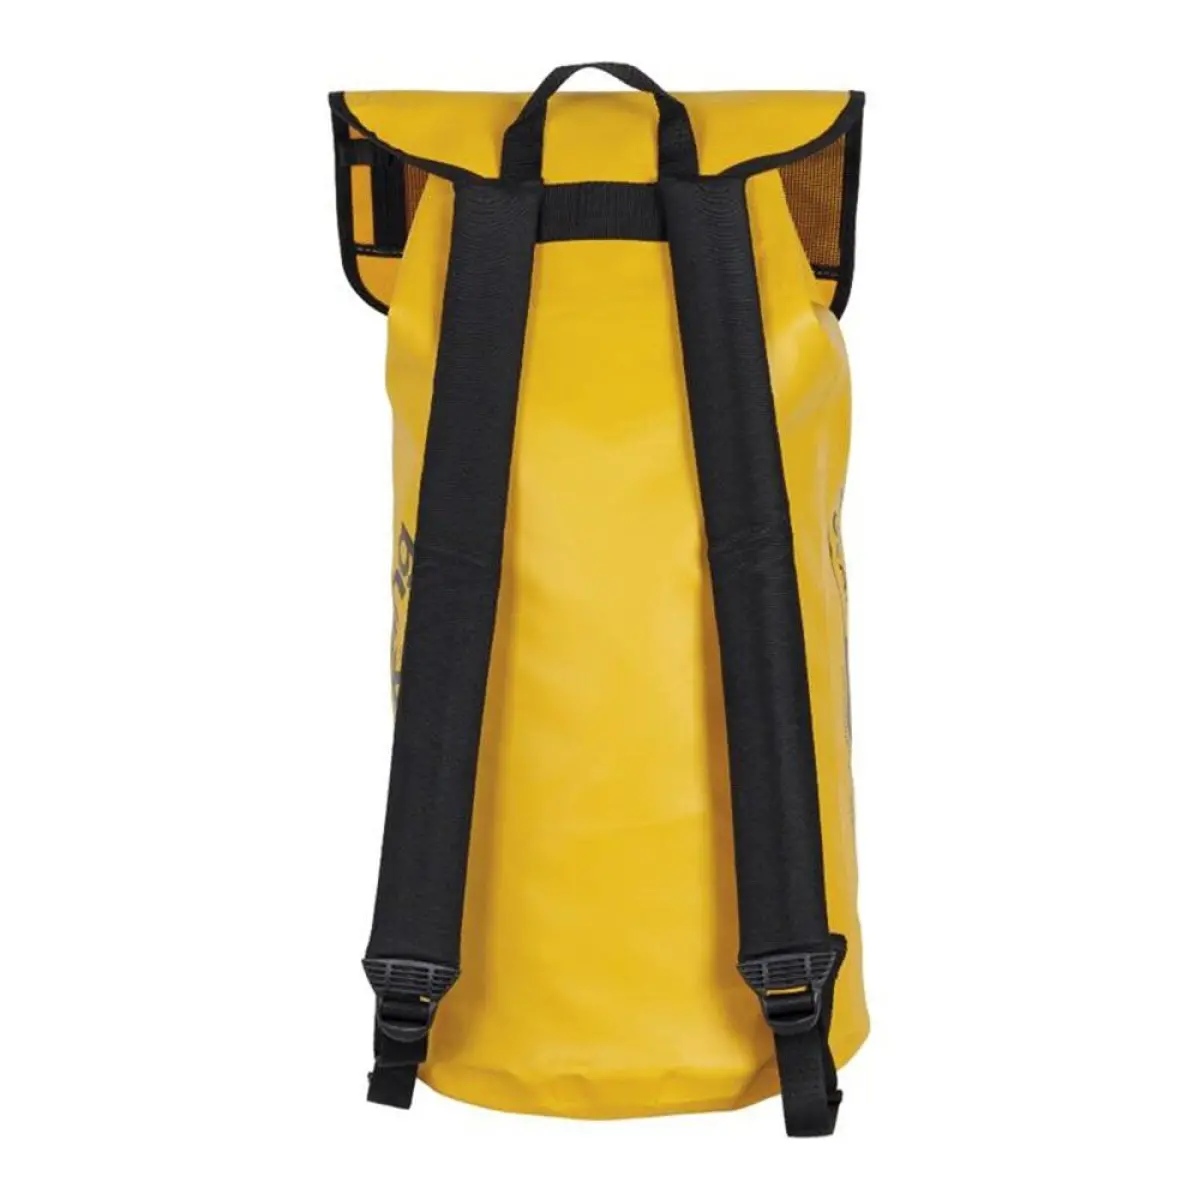 Singing Rock Gear Bag S9000 adjustable padded shoulder straps